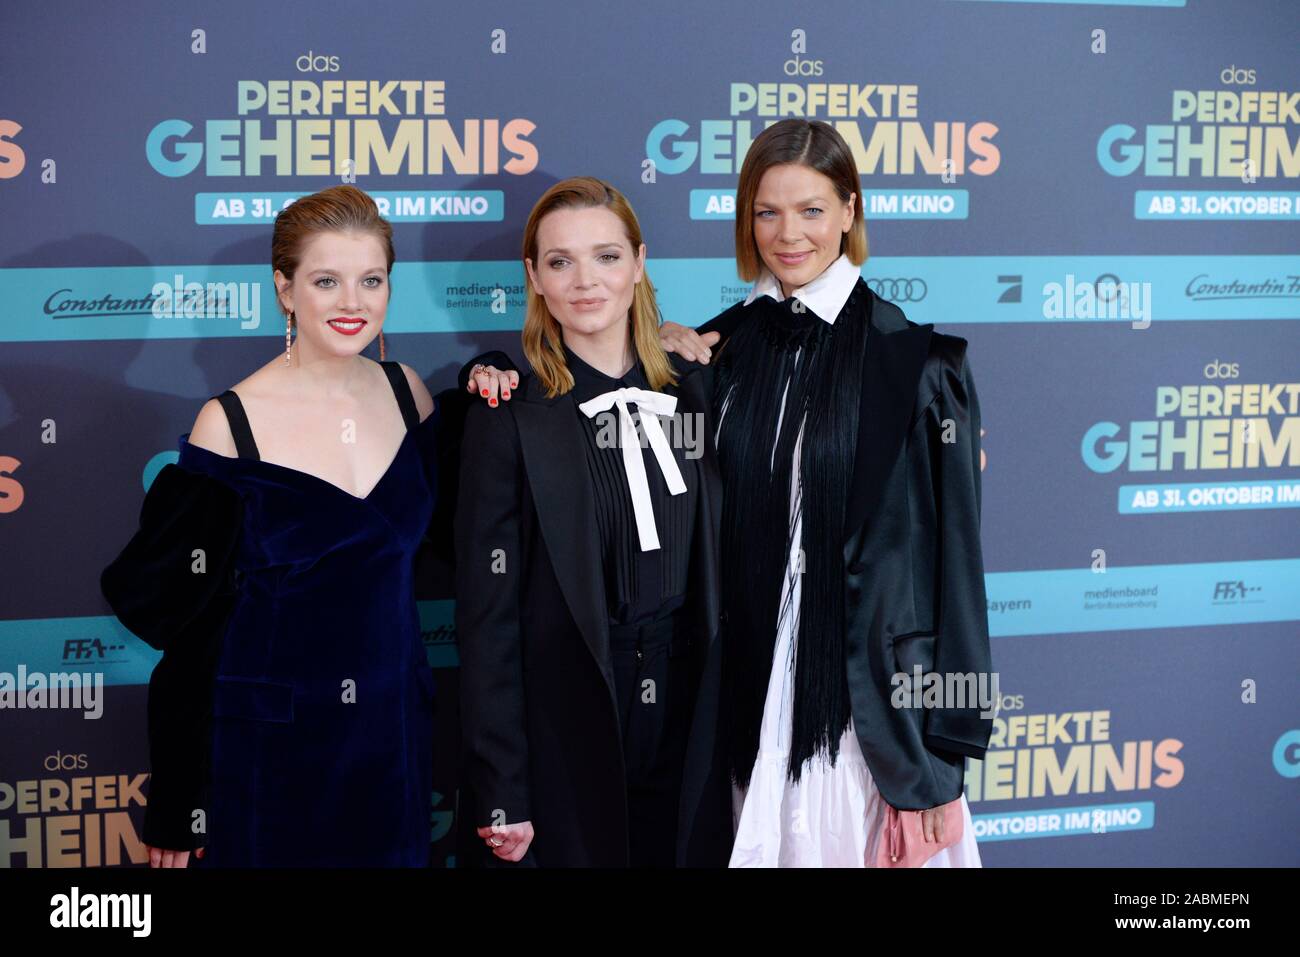 De gauche à droite : les actrices Jella Haase, Karoline Herfurth et Jessica Schwarz à la première du film 'Das perfekte Geheimnis" au Mathäser Kino à Munich. [Traduction automatique] Banque D'Images